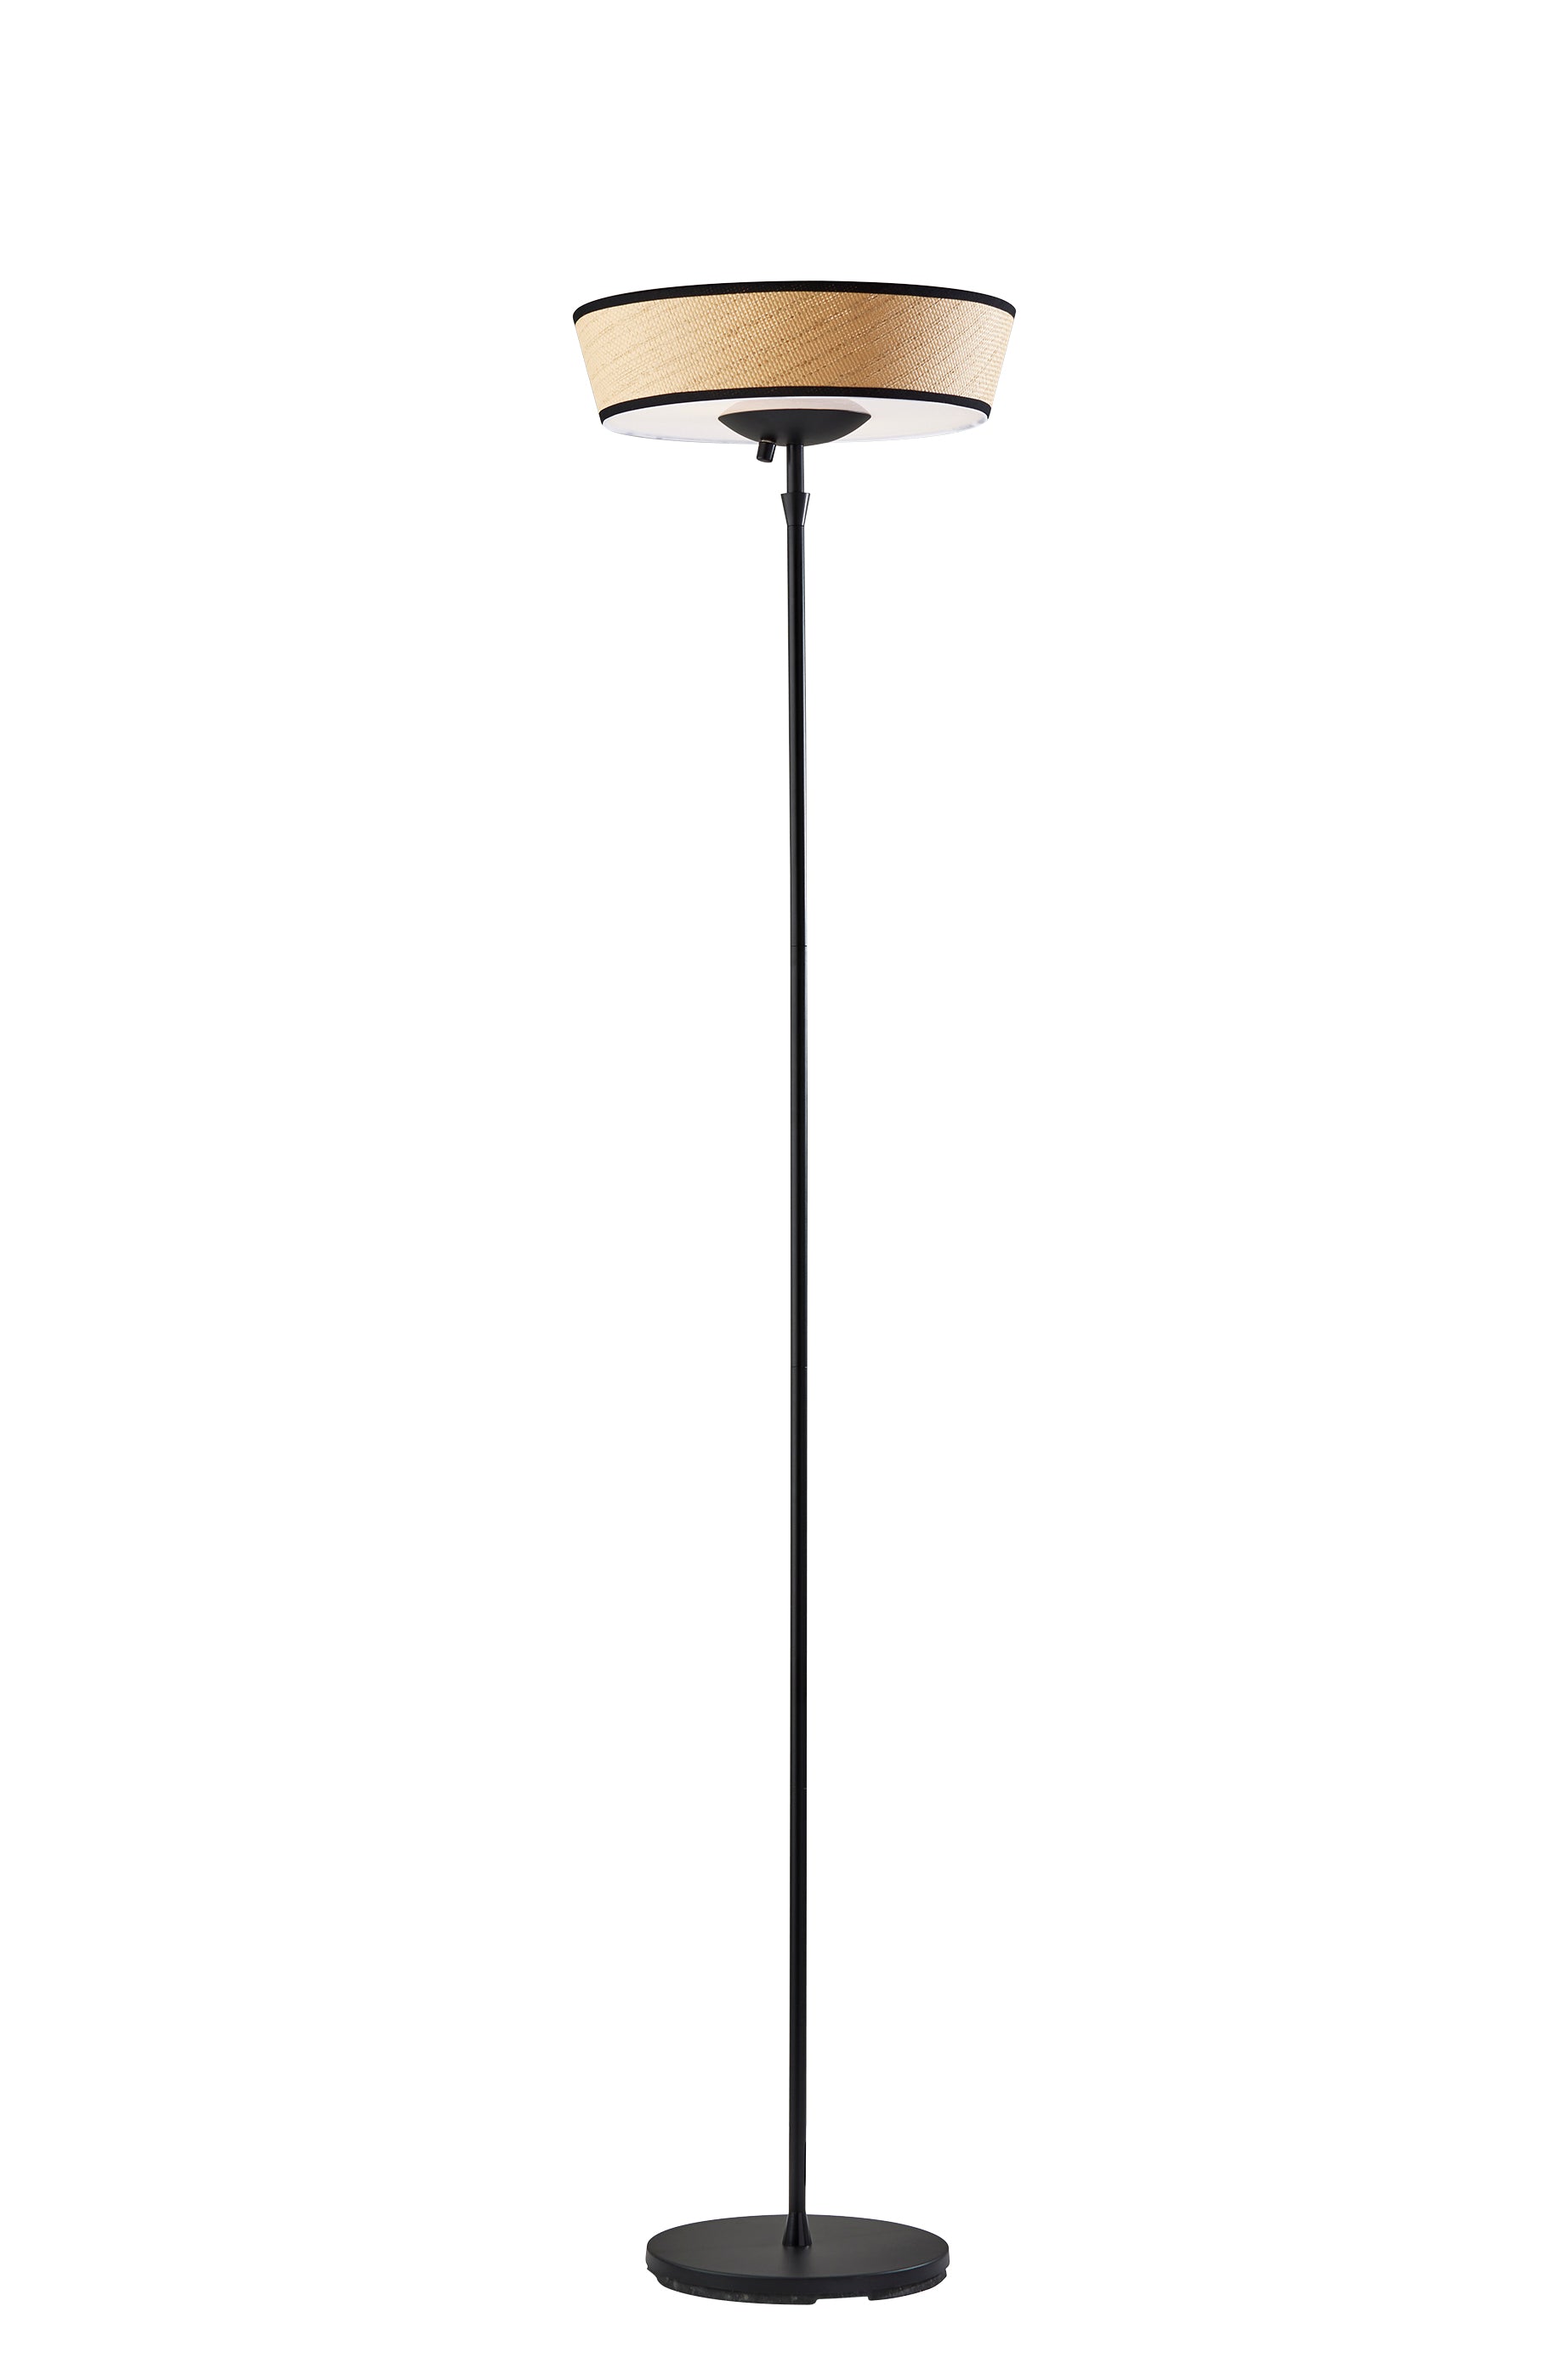 HARPER Lampe sur pied Noir - 5169-12 | ADESSO